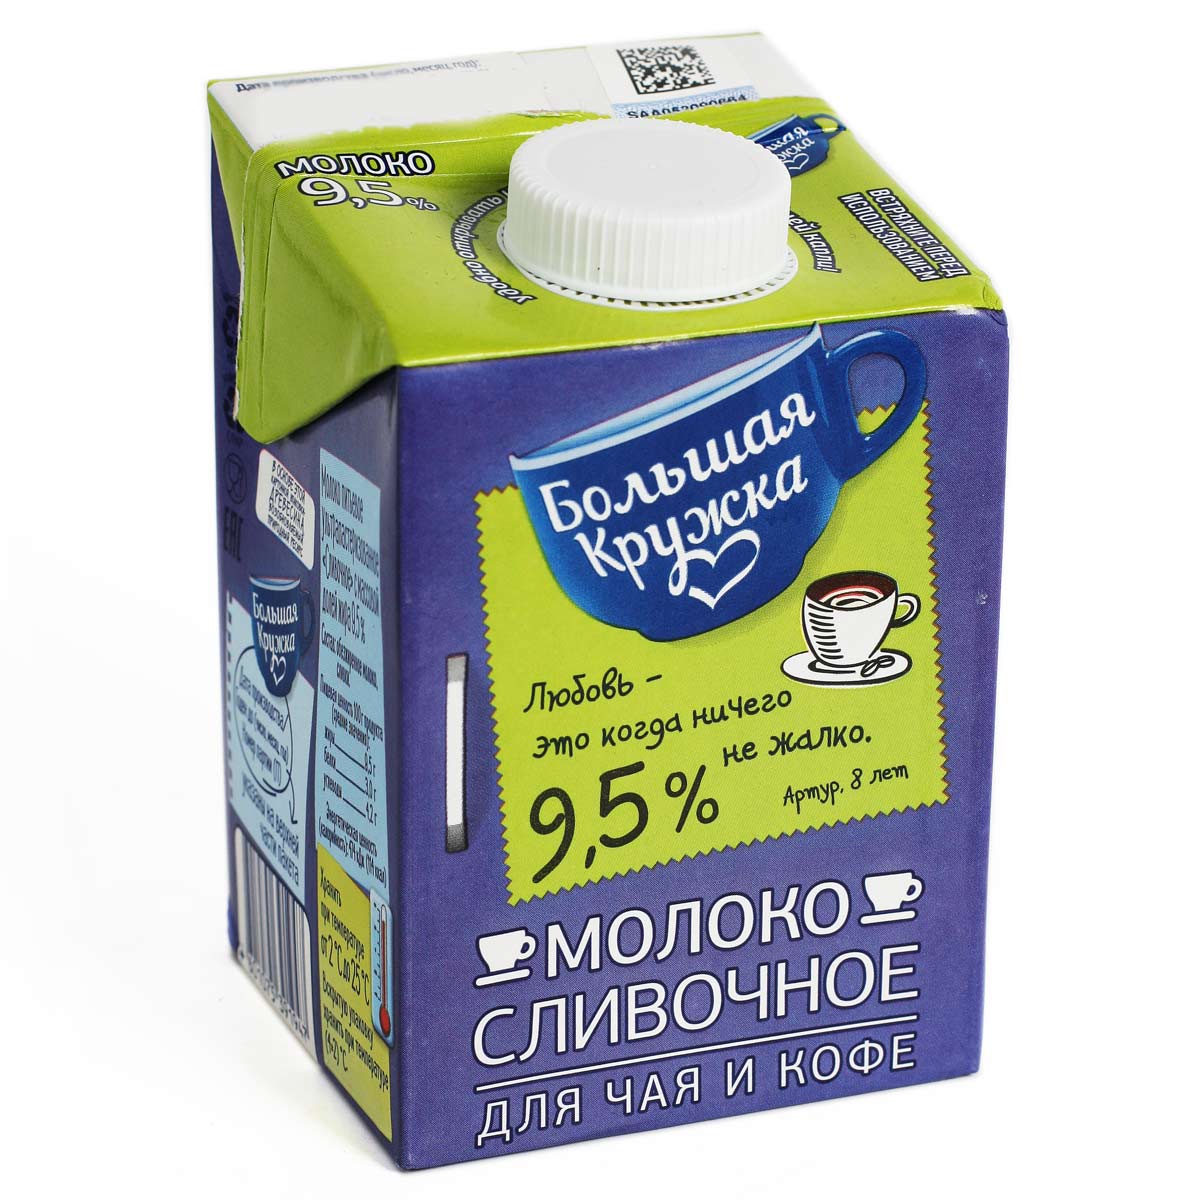 Сливочное молоко Большая Кружка 9.5% 0.5л